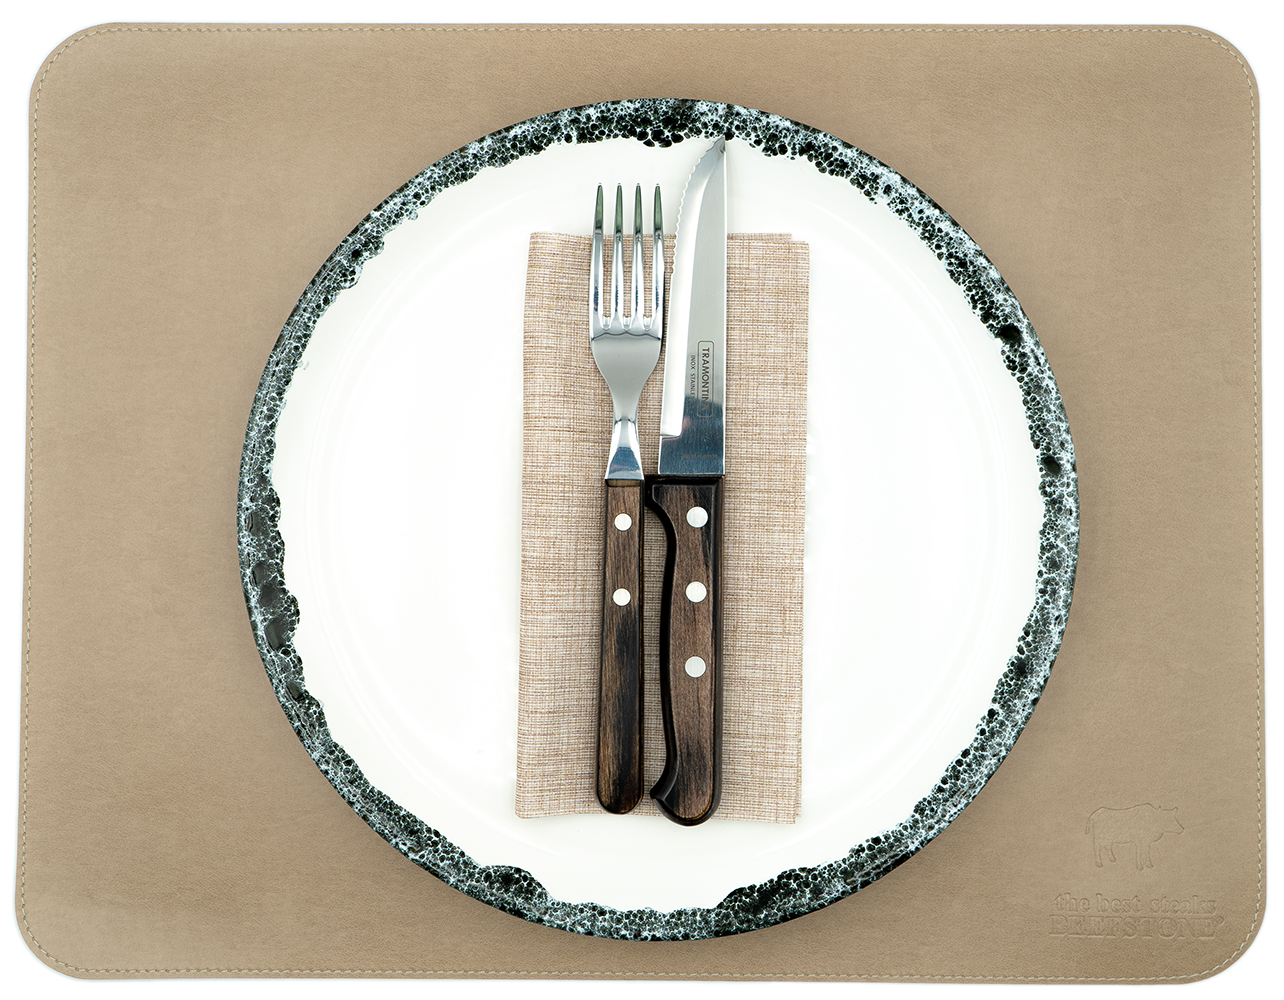 Original Beefstone® Tischset aus veganem PU Kunstleder - doppelseitig - 44 x 34 cm - Schwarzbraun / Ecru